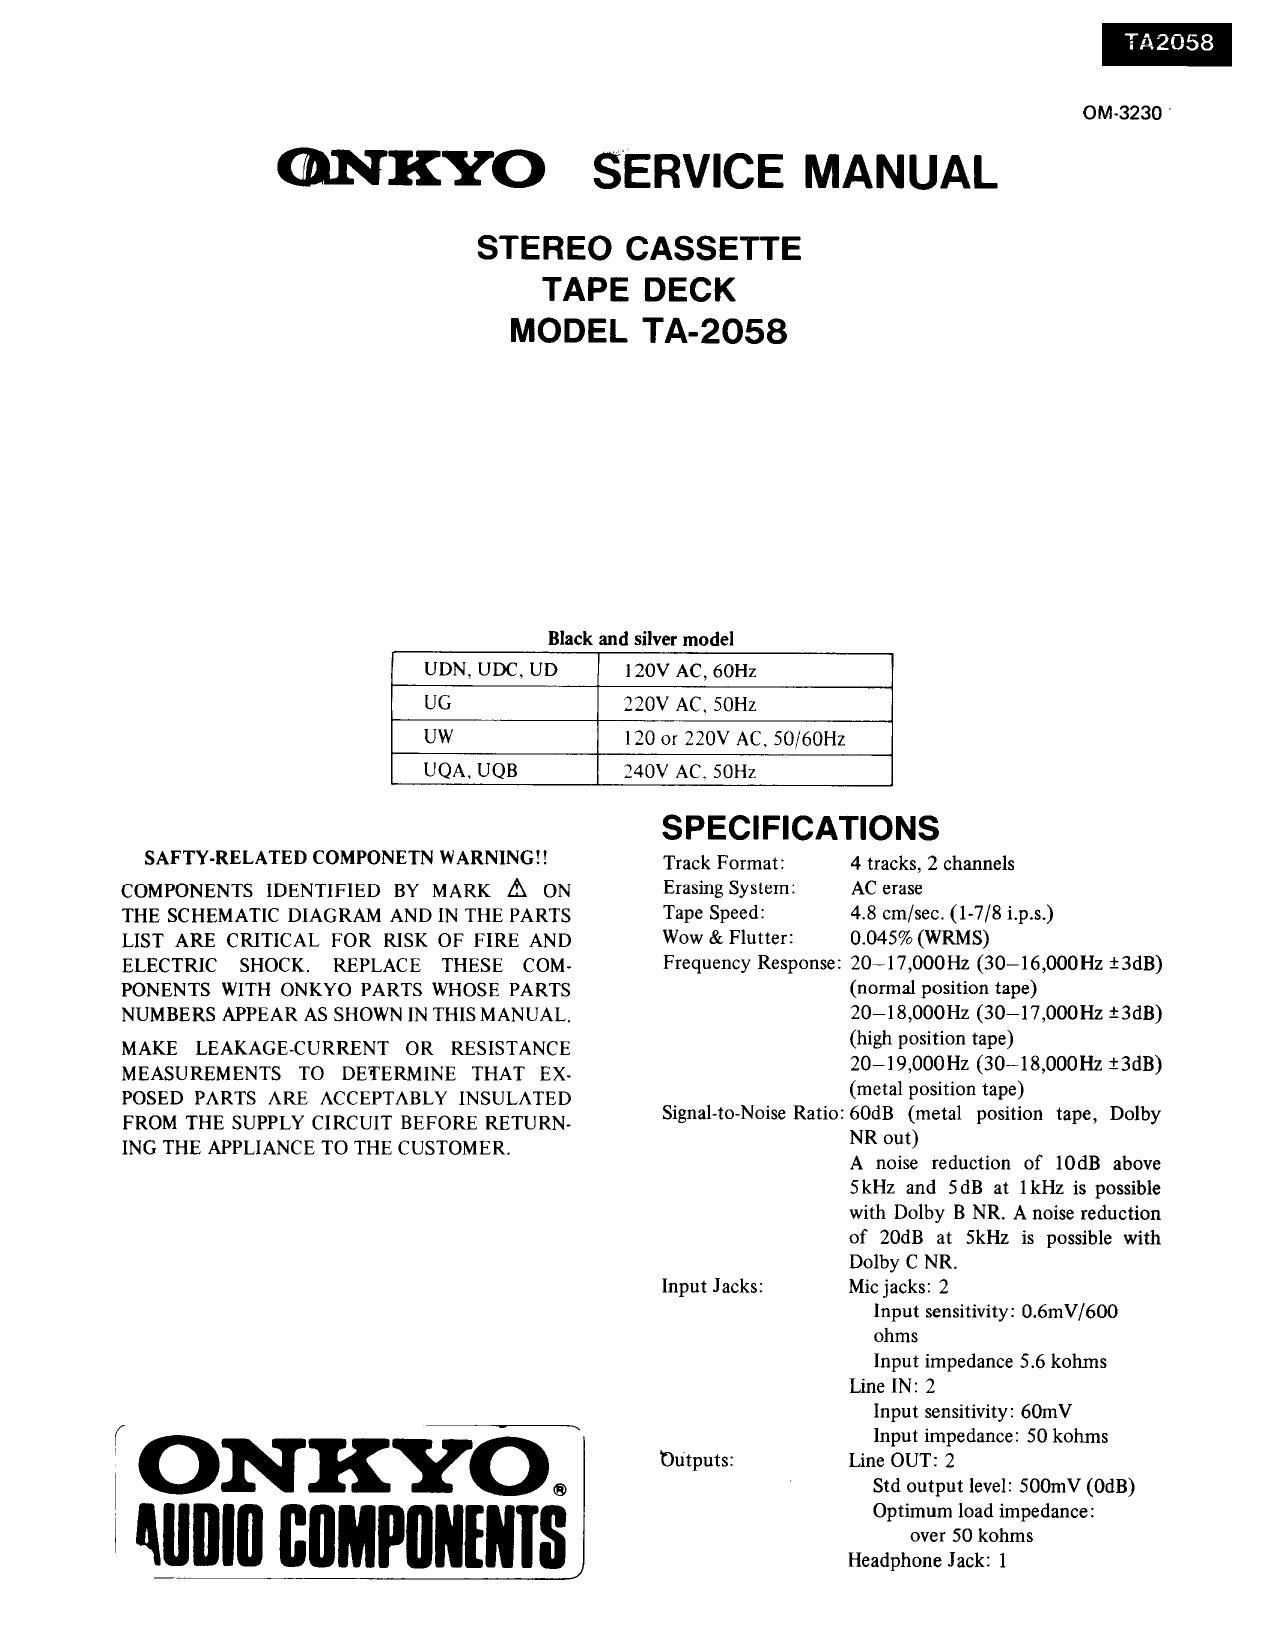 Onkyo TA 2058 Service Manual